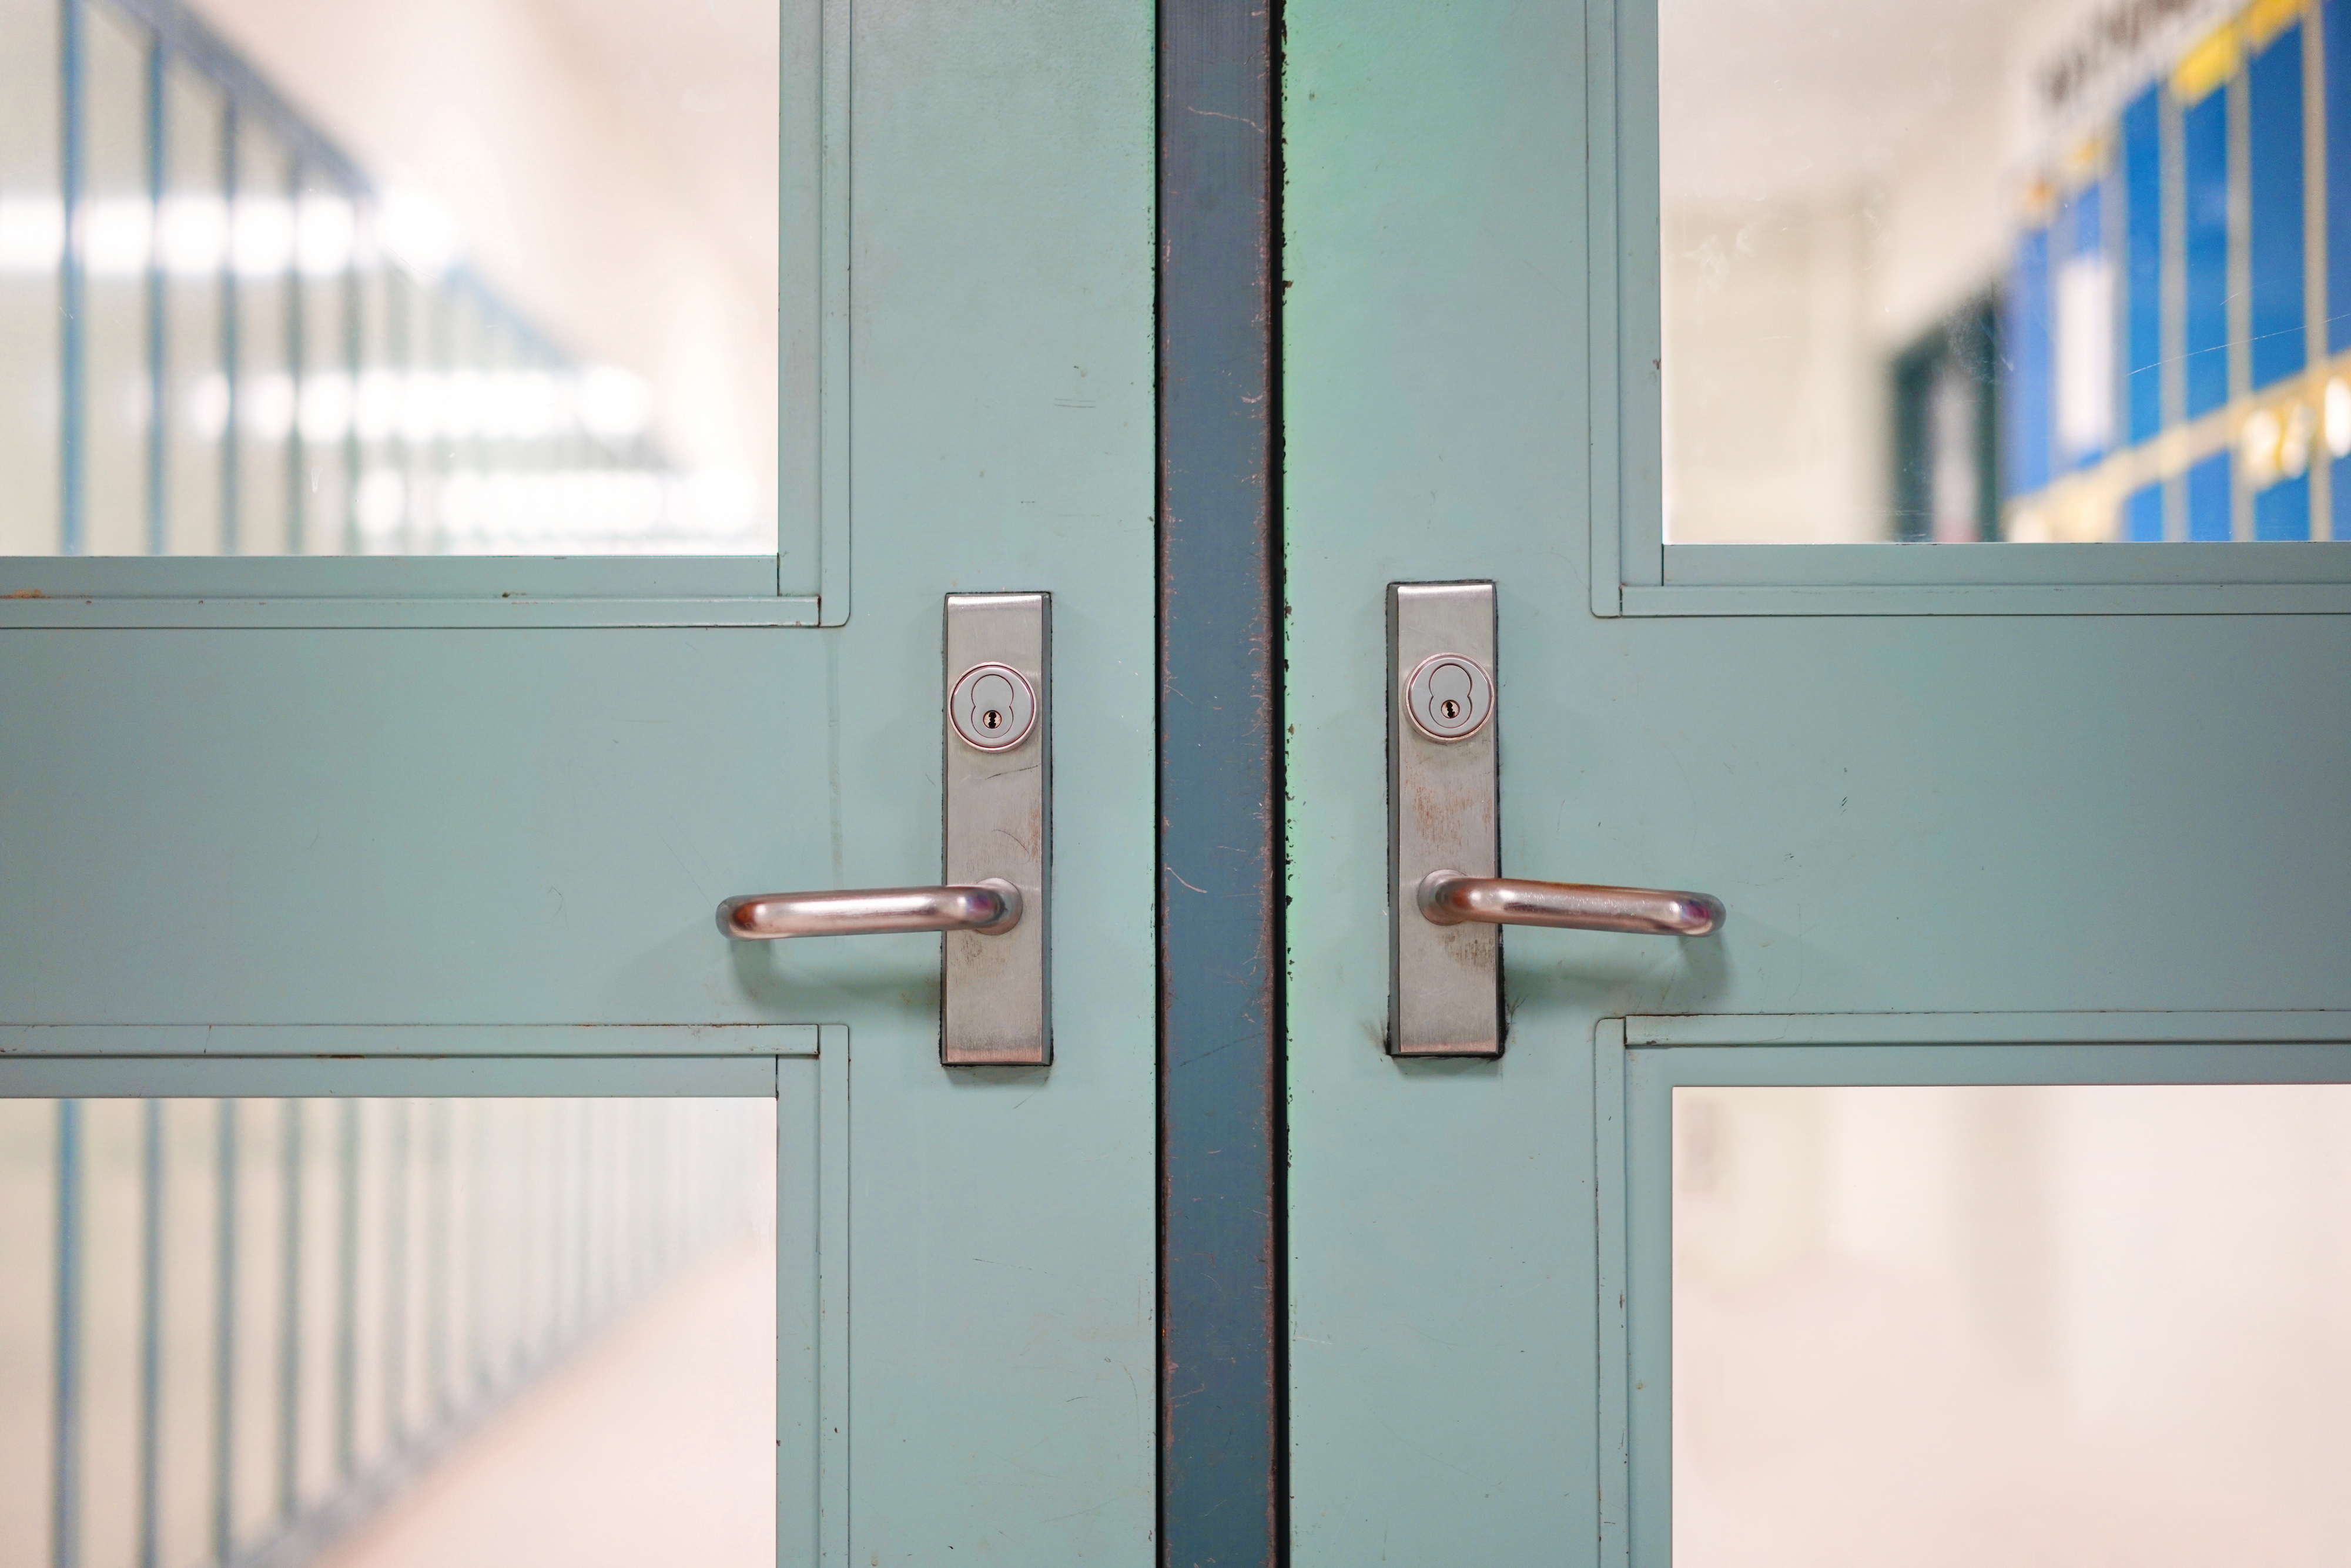 Closed school hallway doors